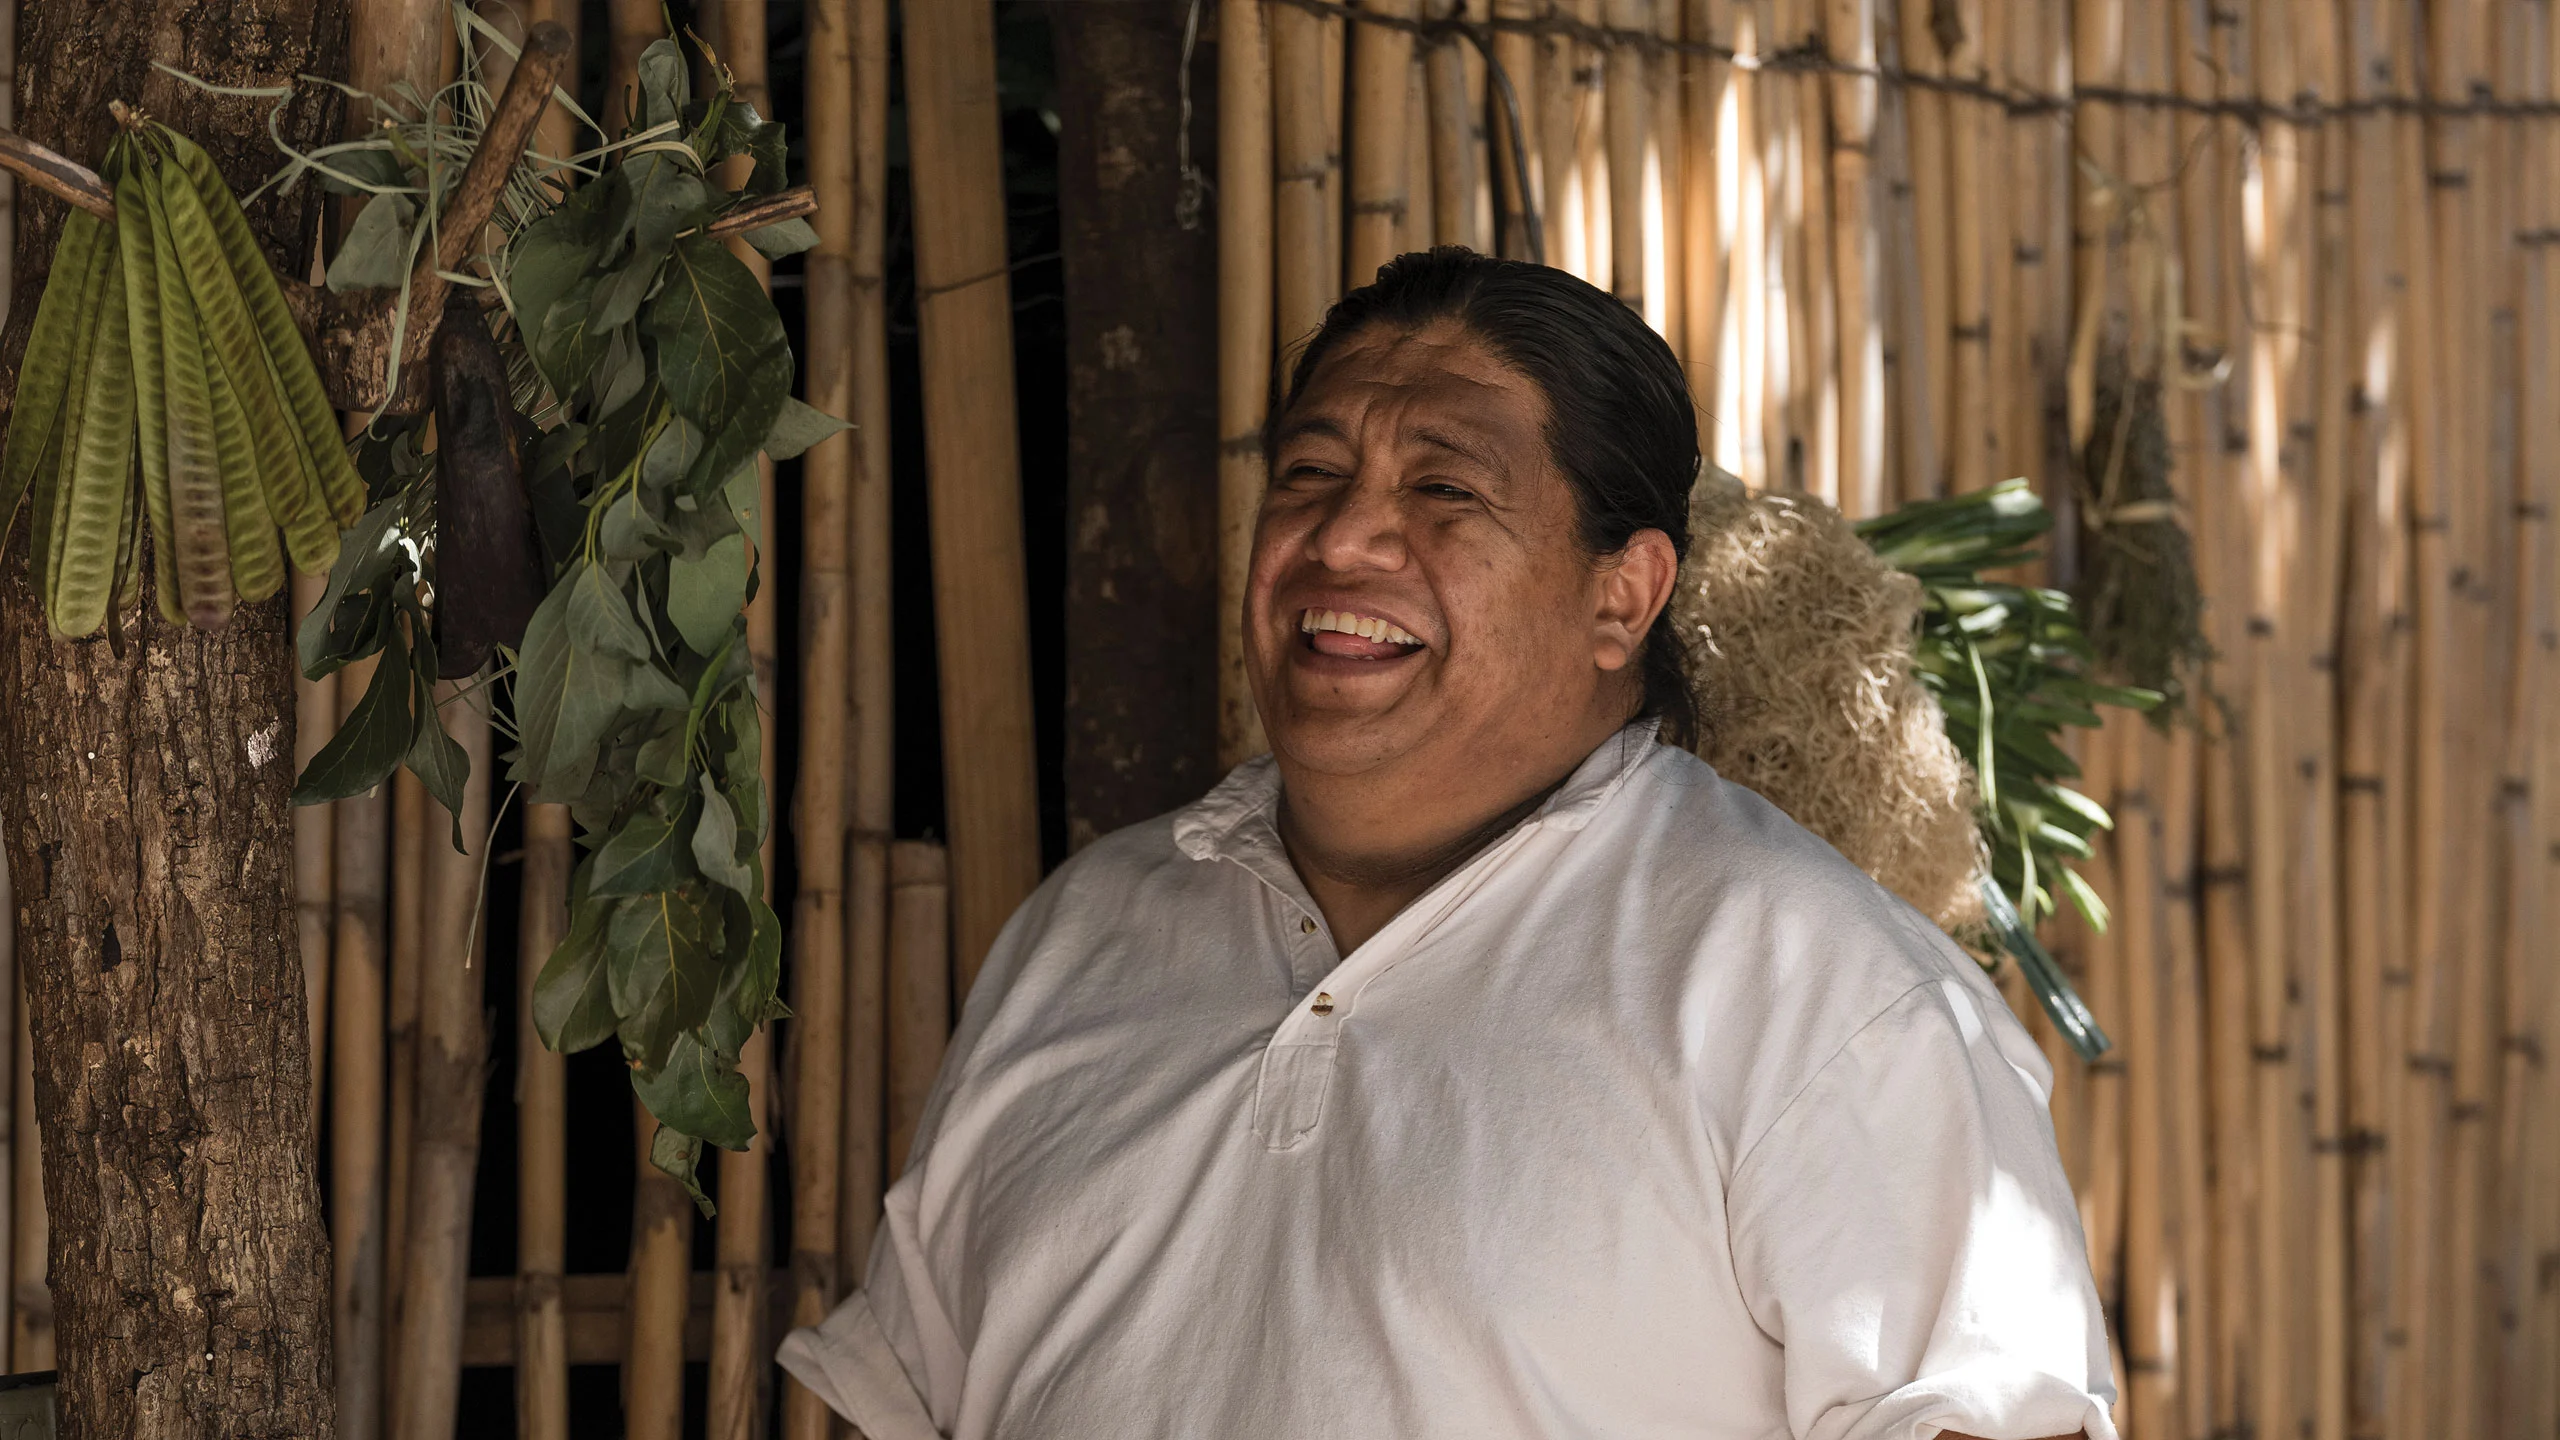 El cocinero oaxaqueño Luis Arellano publica su libro “Refugio”